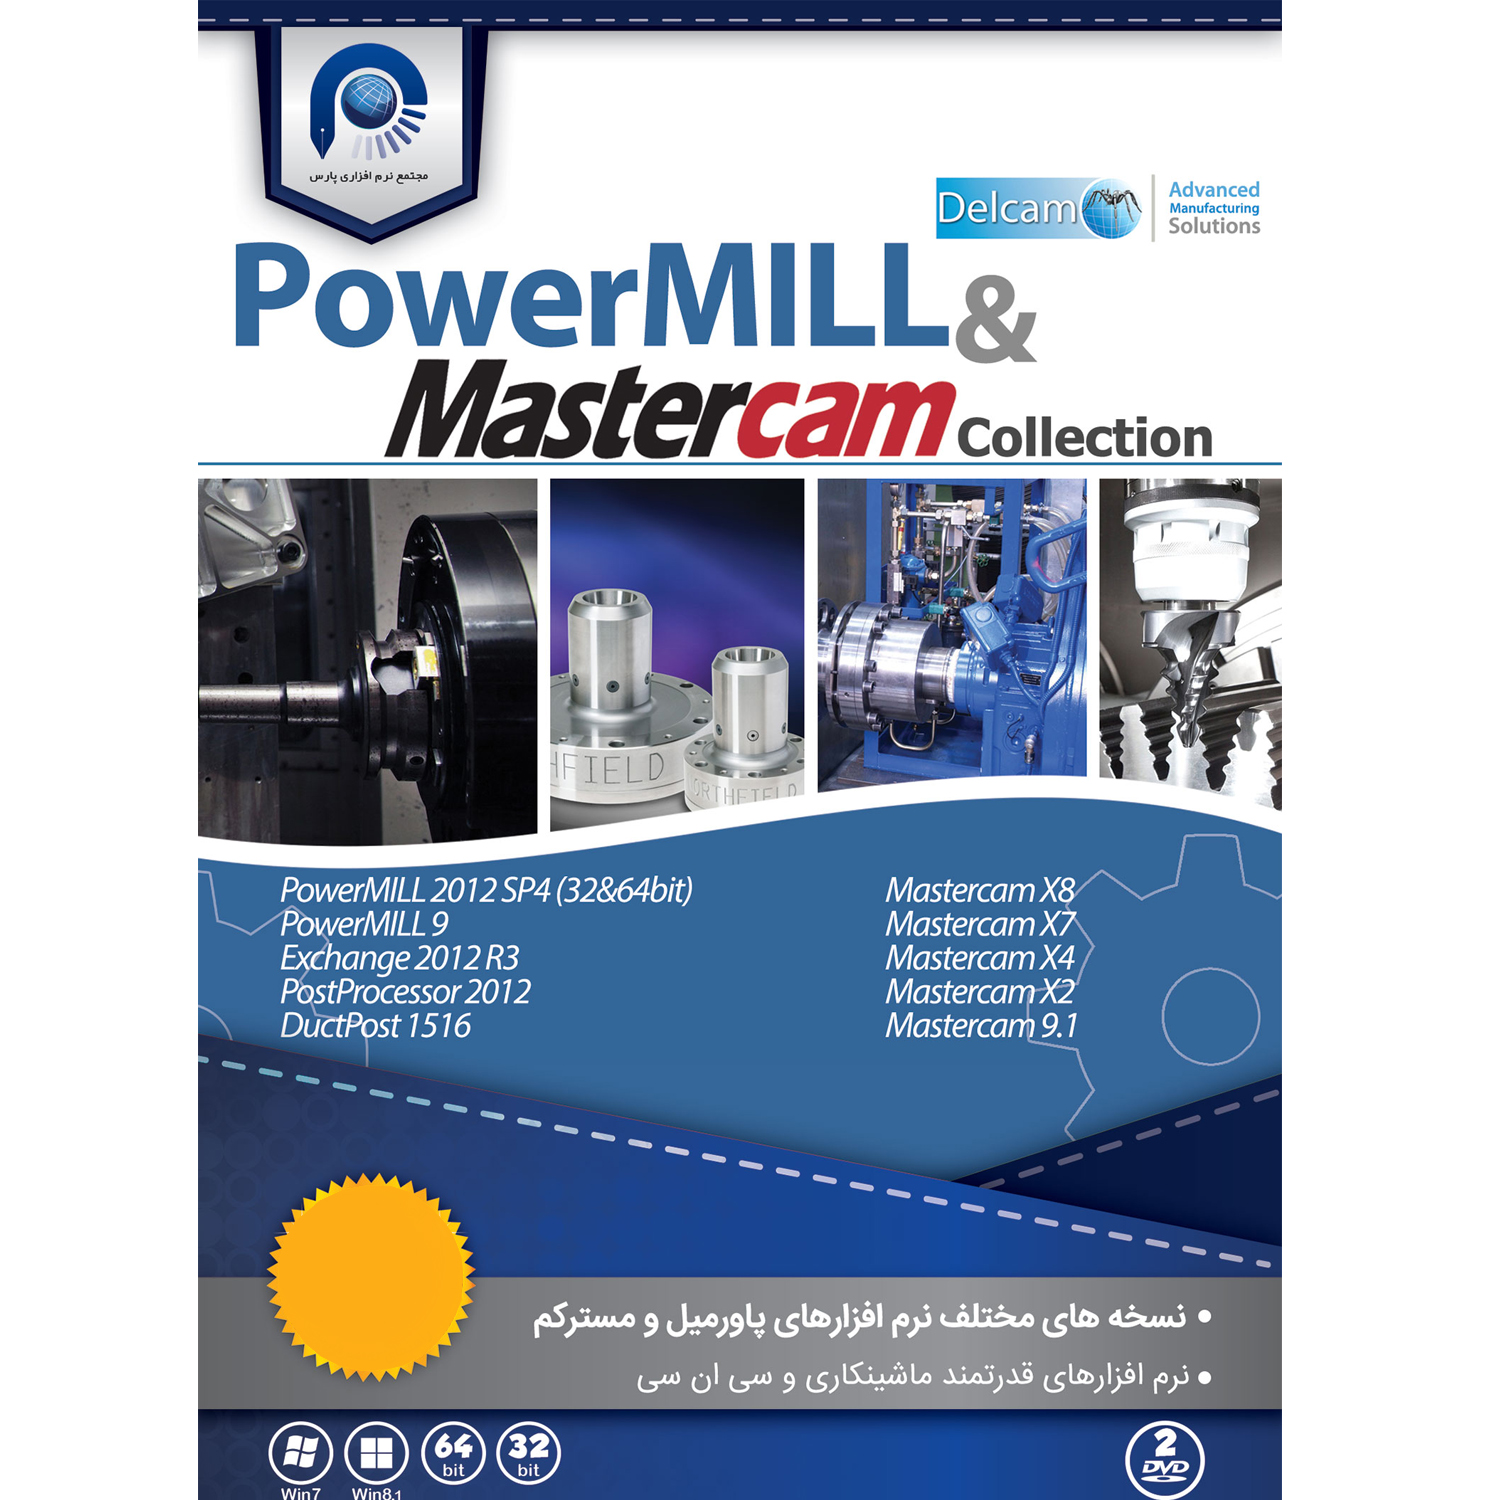  مجموعه نرم افزاری PowerMill & MasterCAM Collection نشر مجتمع نرم افزاری پارس